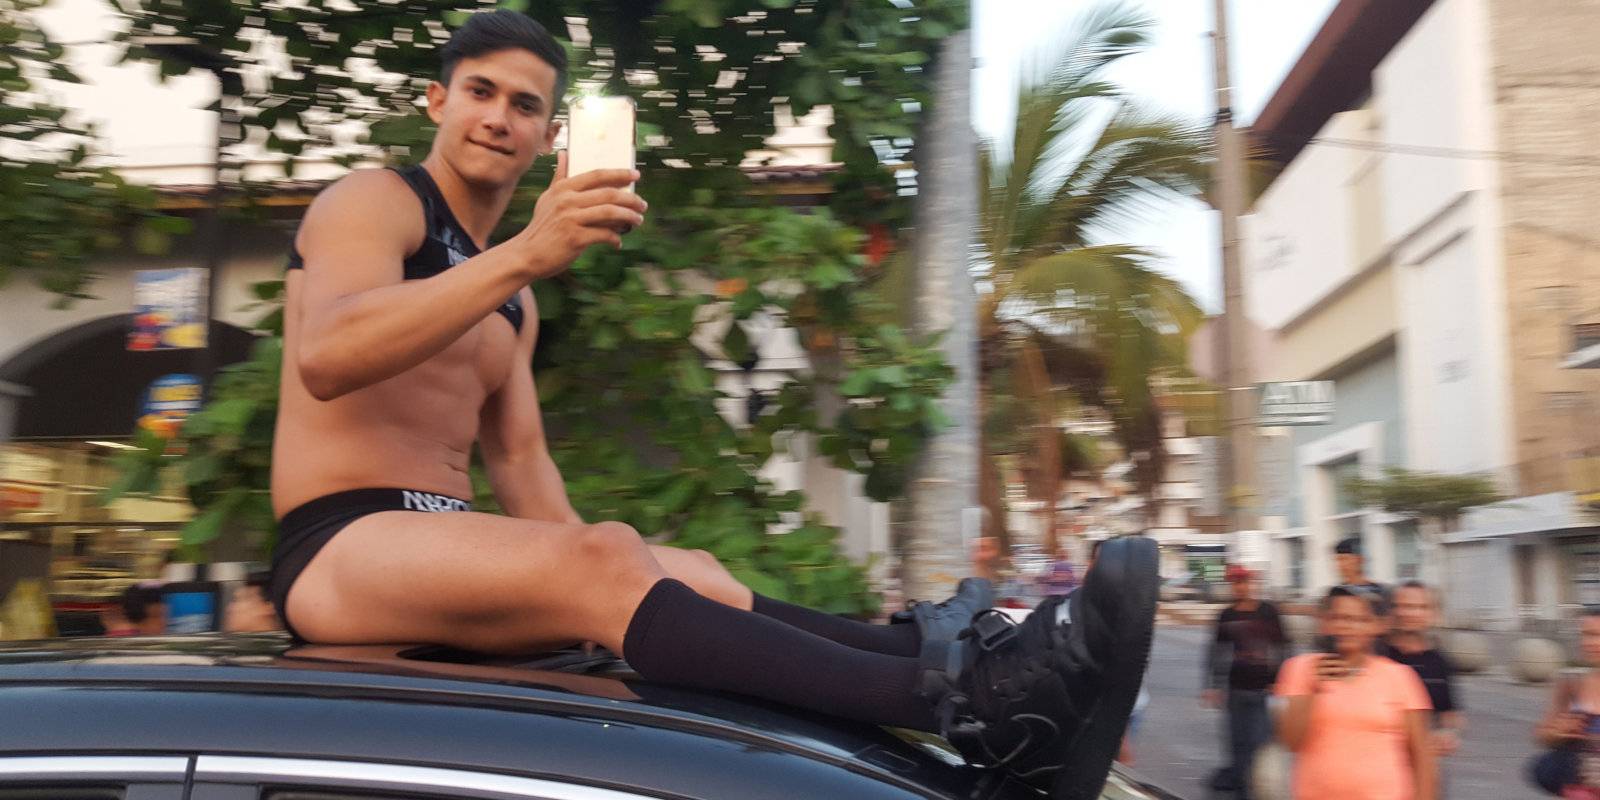 A cute gay guy in Puerto Vallarta, Mexico.